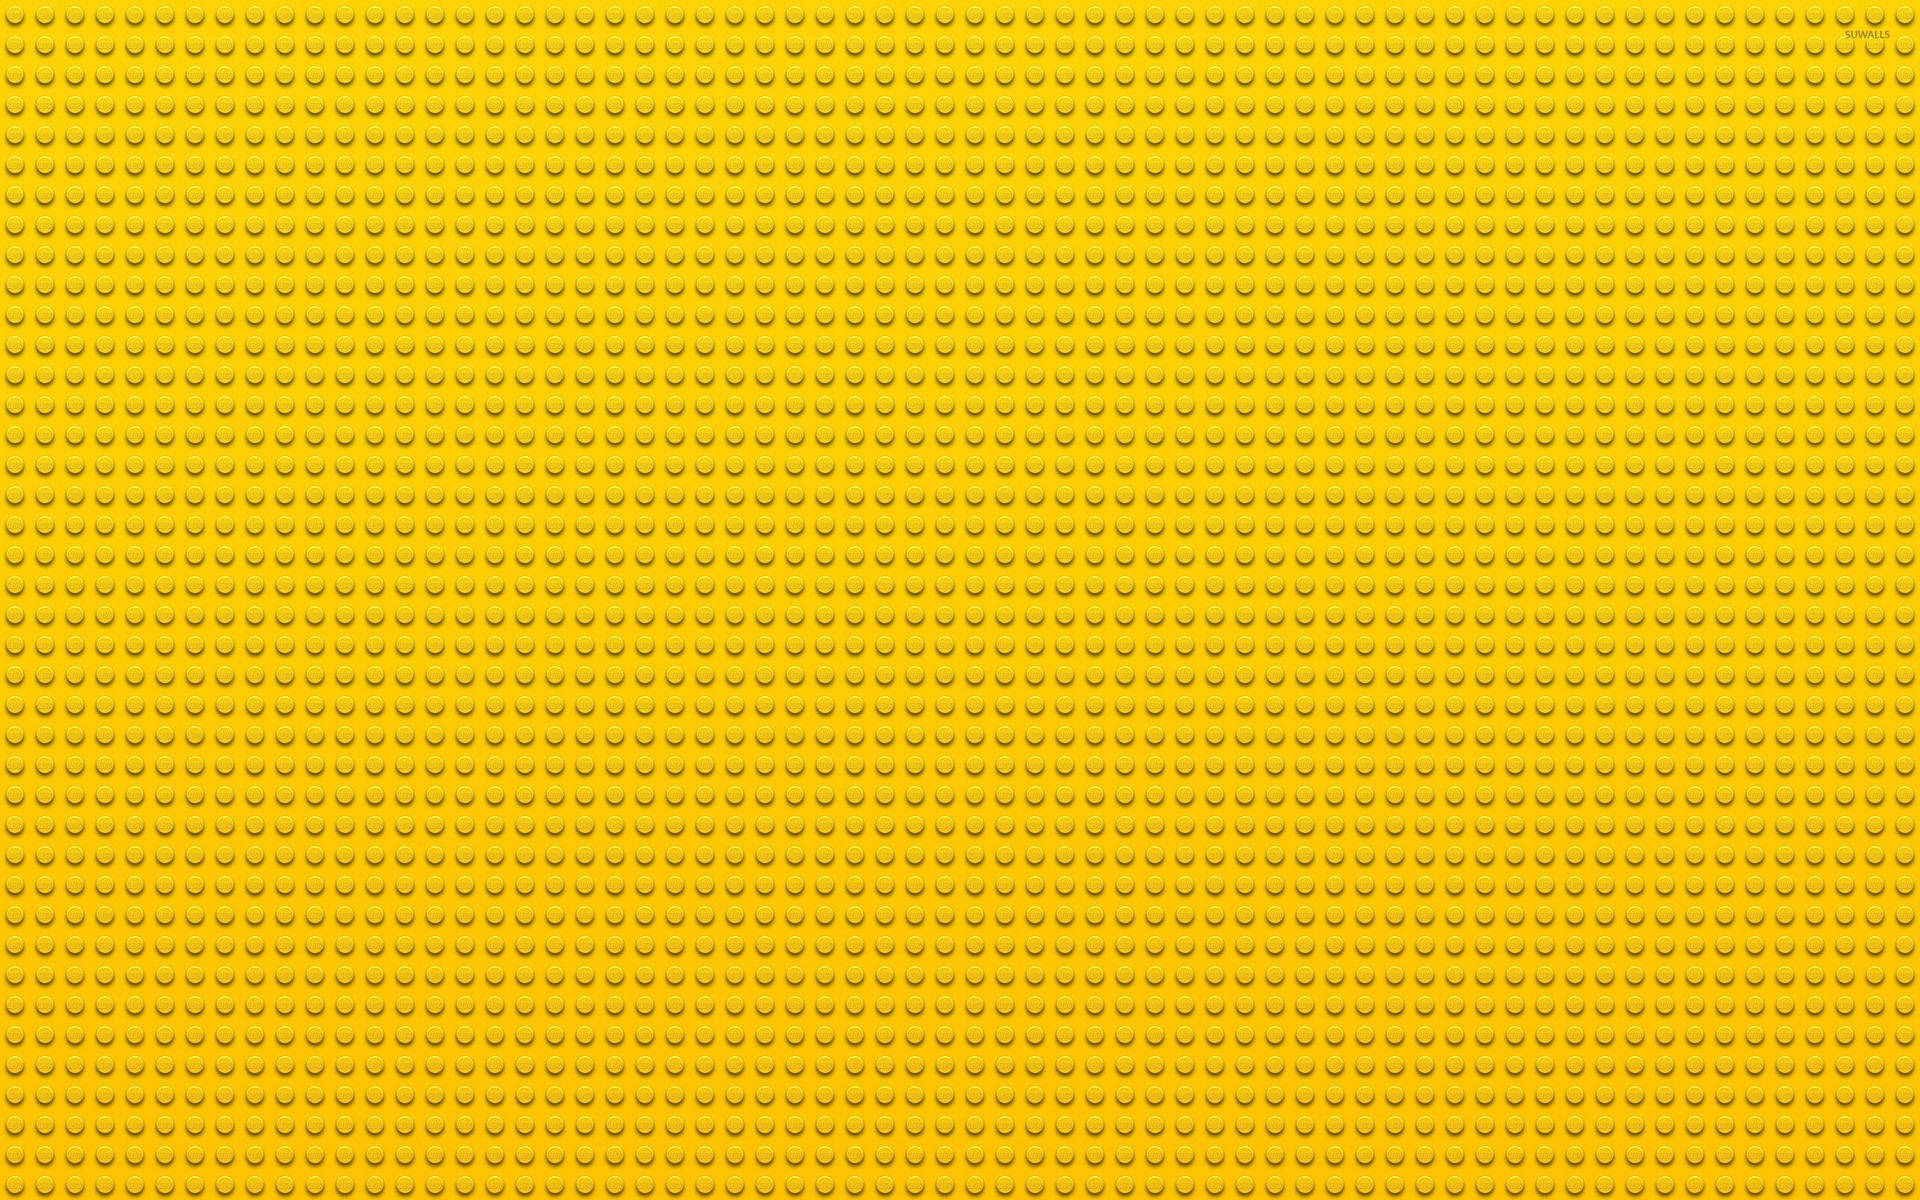 Lego Backgrounds